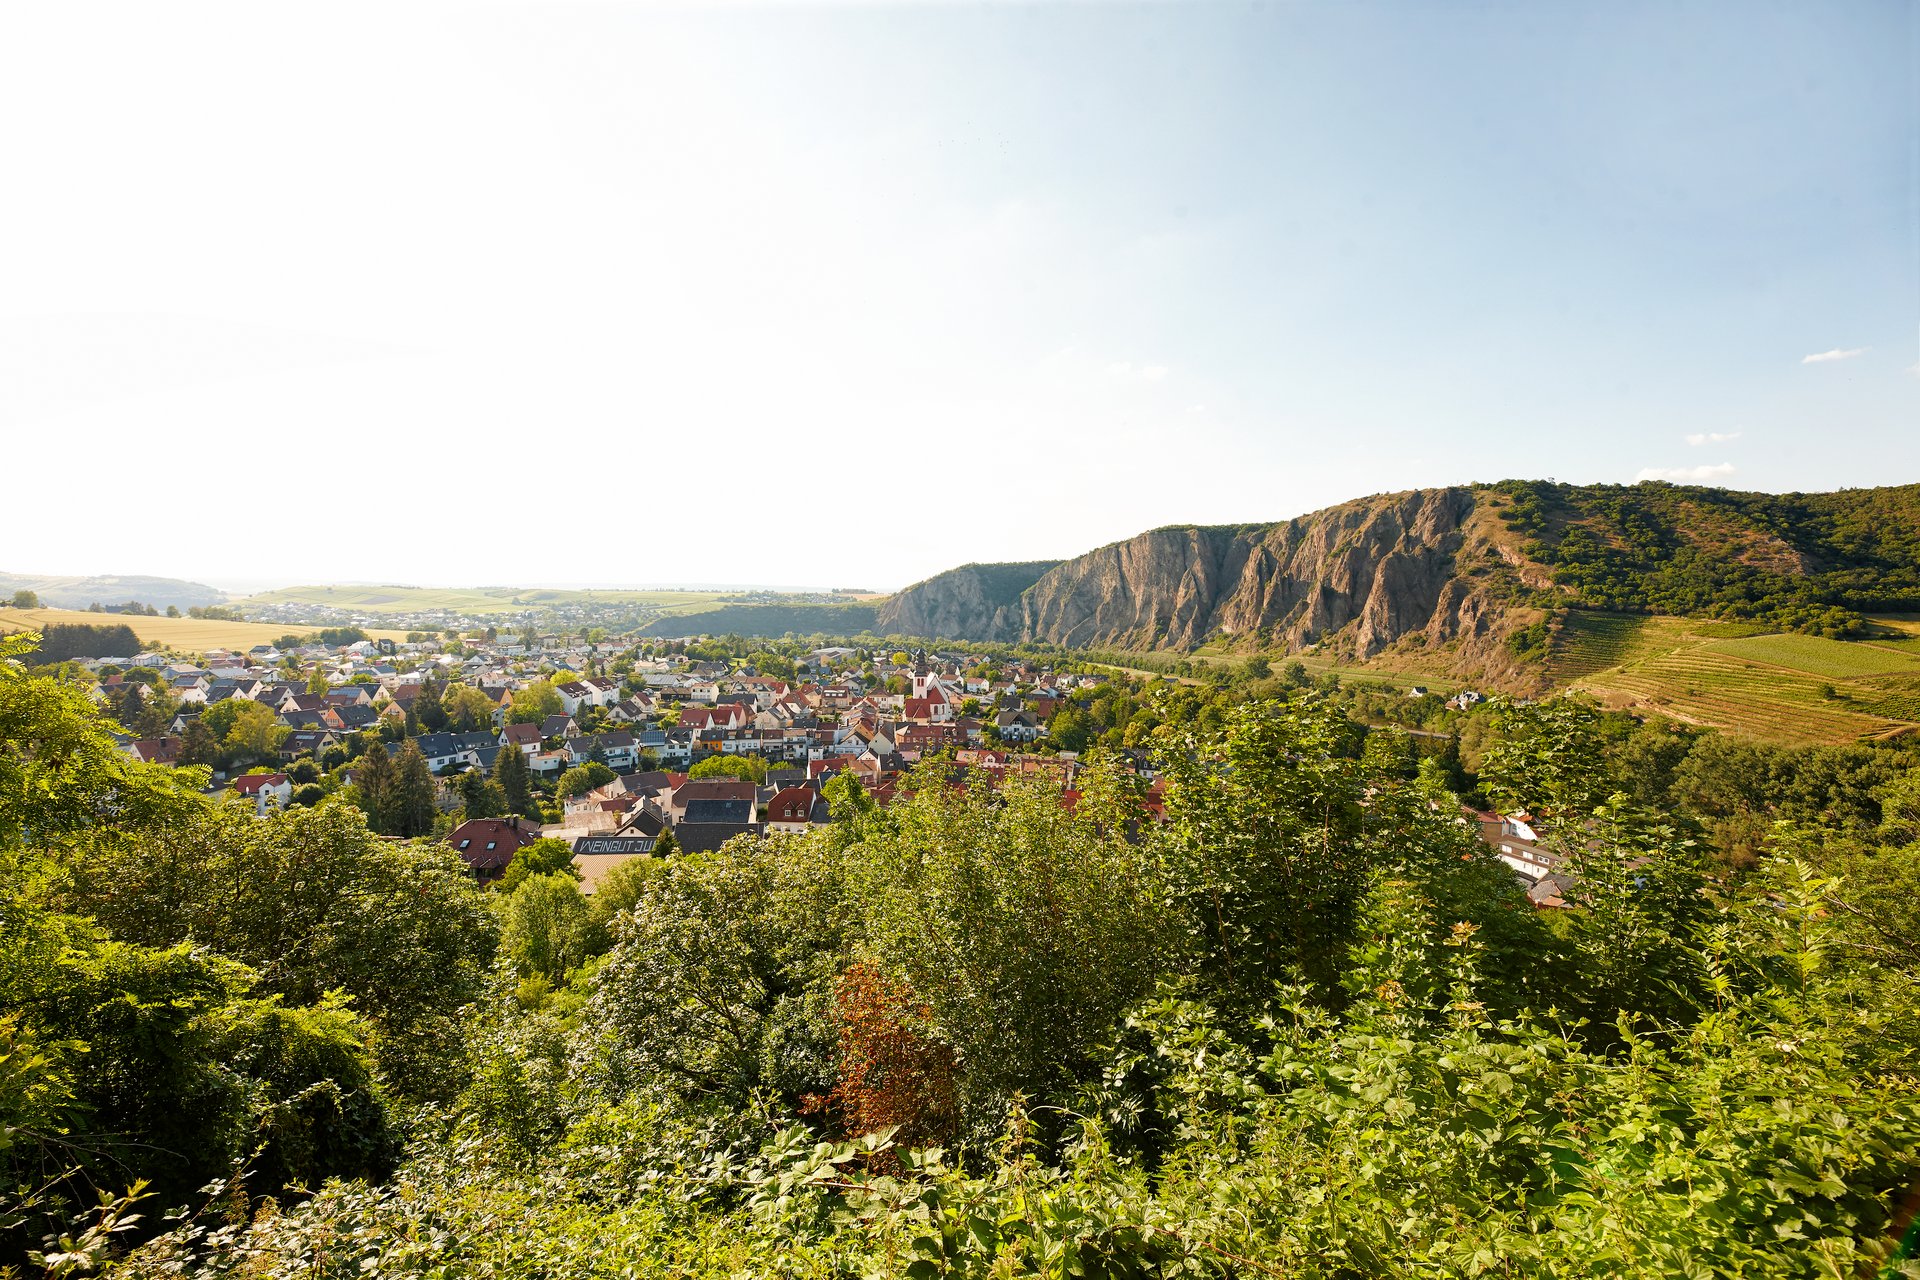 Stadt Bad Kreuznach im Nahe-Tal mit dem Berg Rotenfels im Hintergrund - Rheumazentrum Rheinland-Pfalz